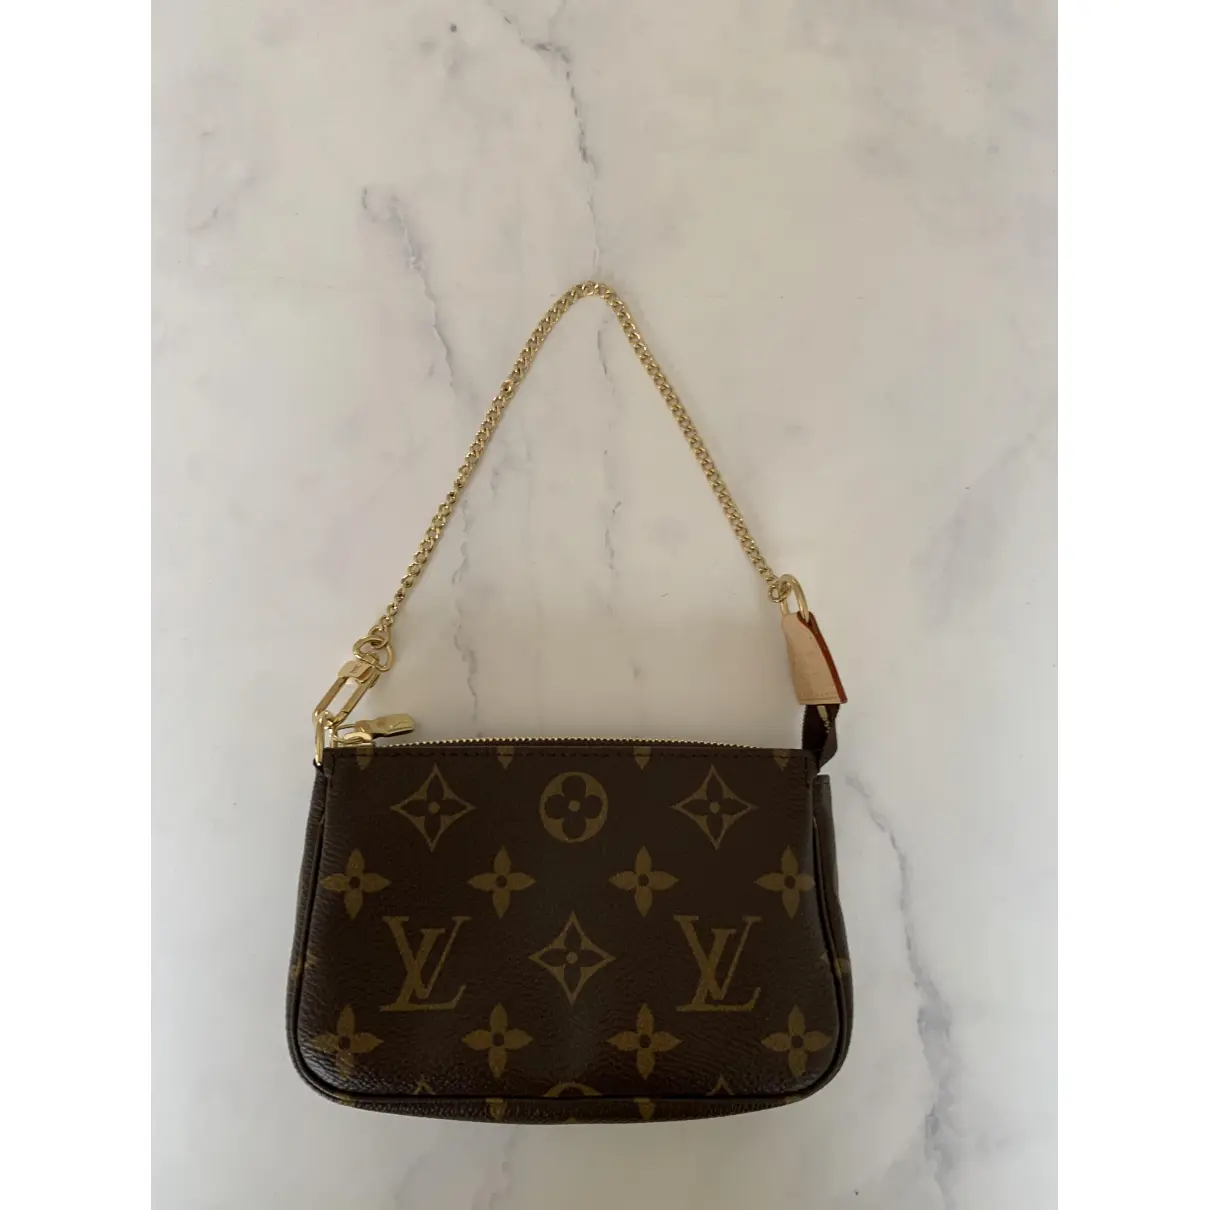 Buy Louis Vuitton Pochette Accessoire cloth handbag online